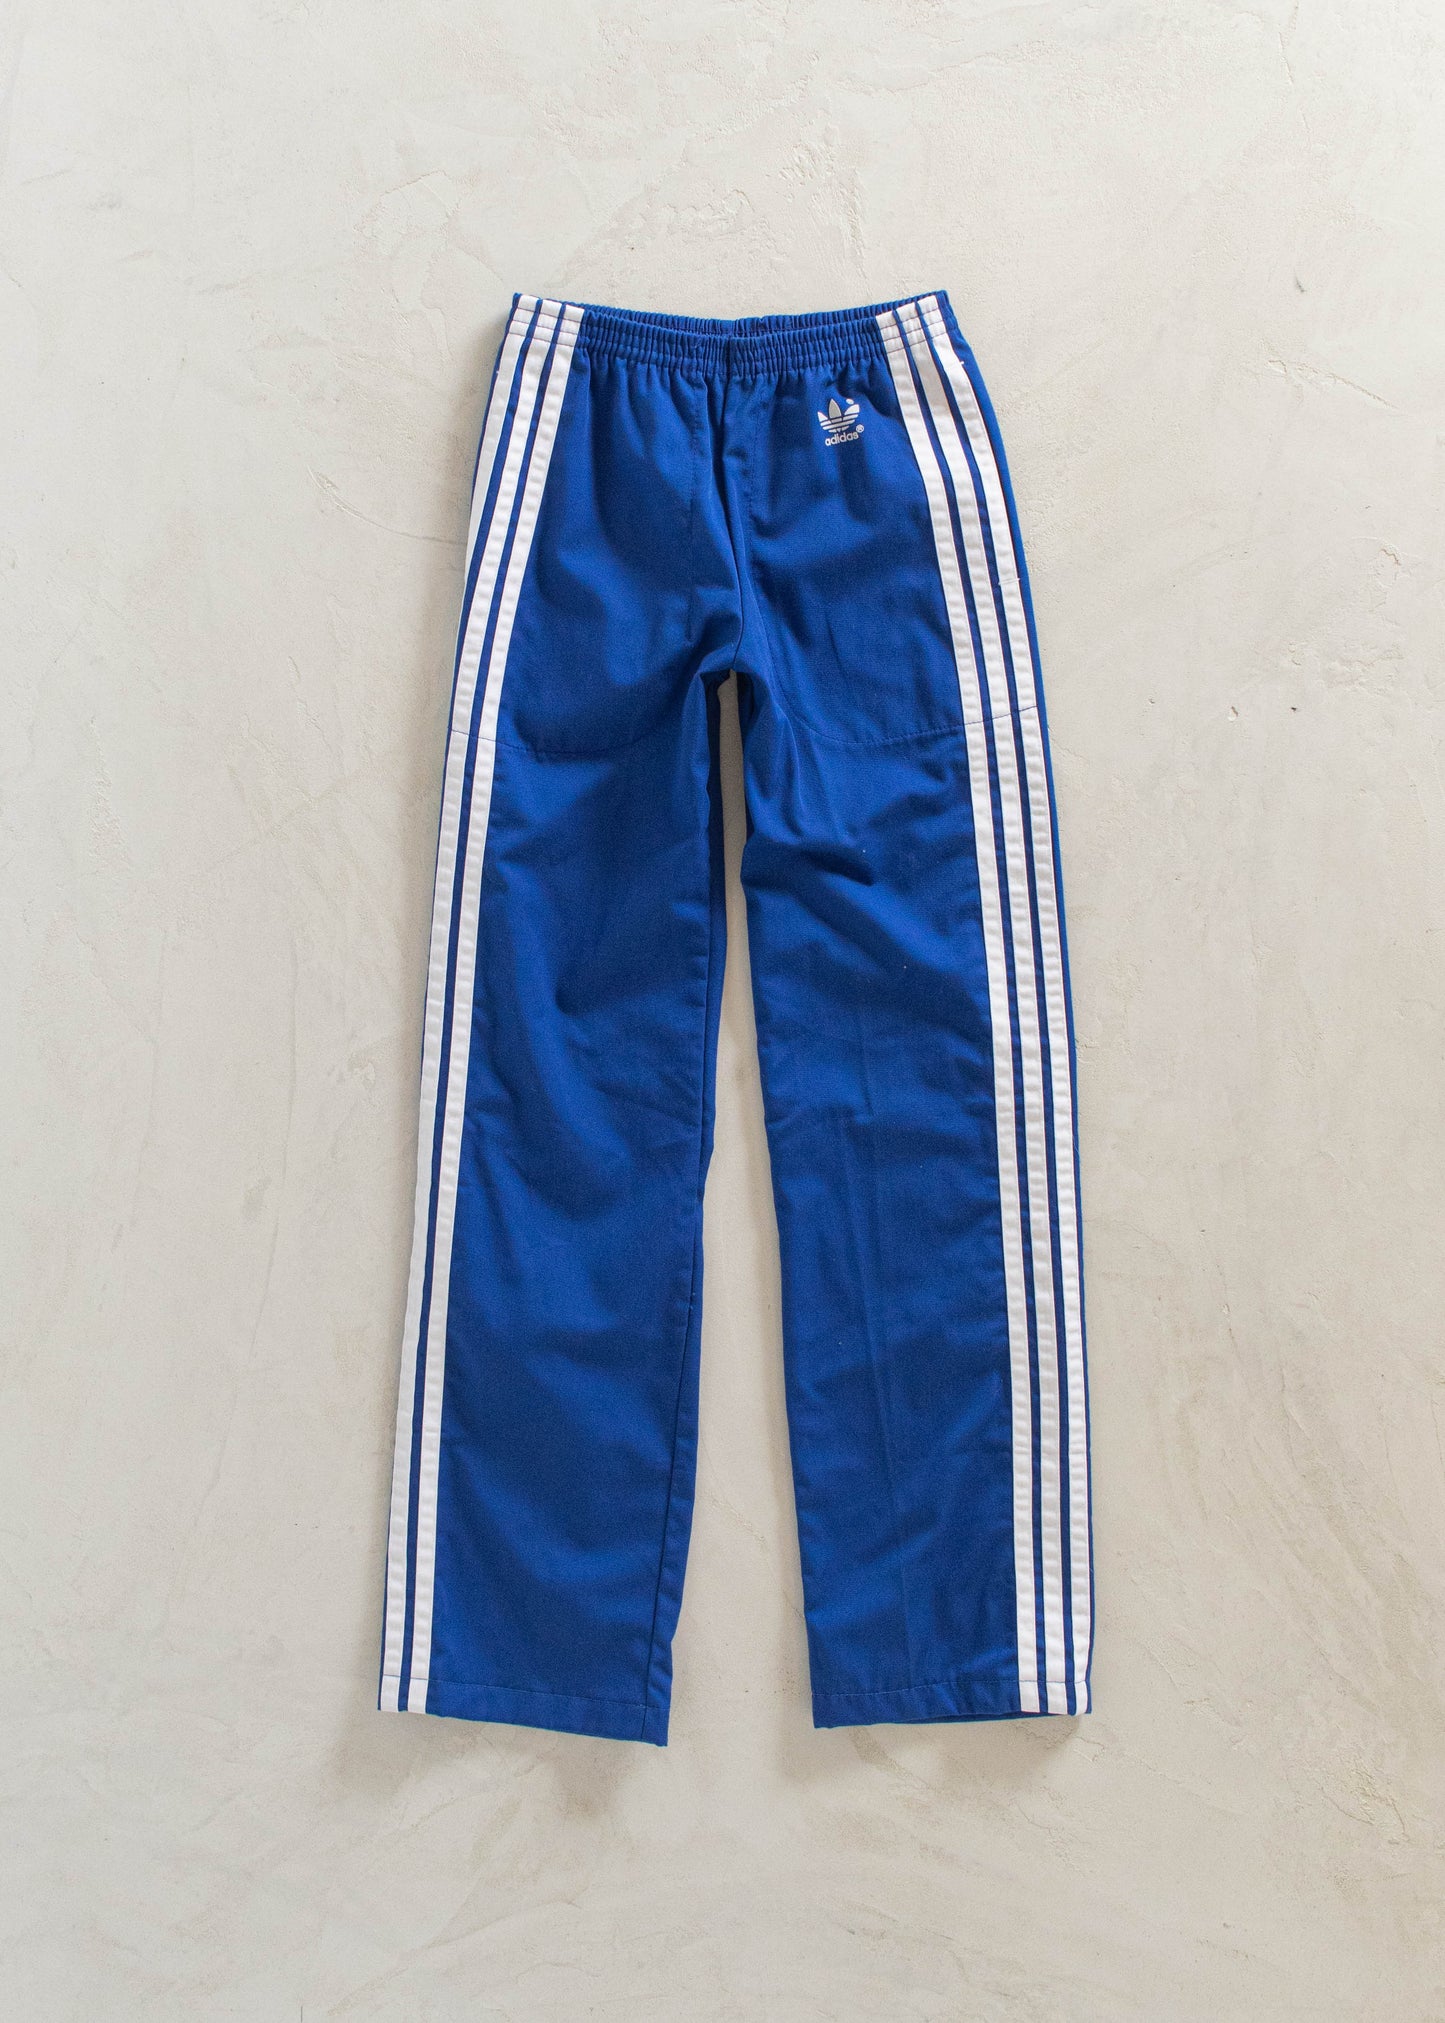 1980s Adidas Track Pants Size 2XS/XS